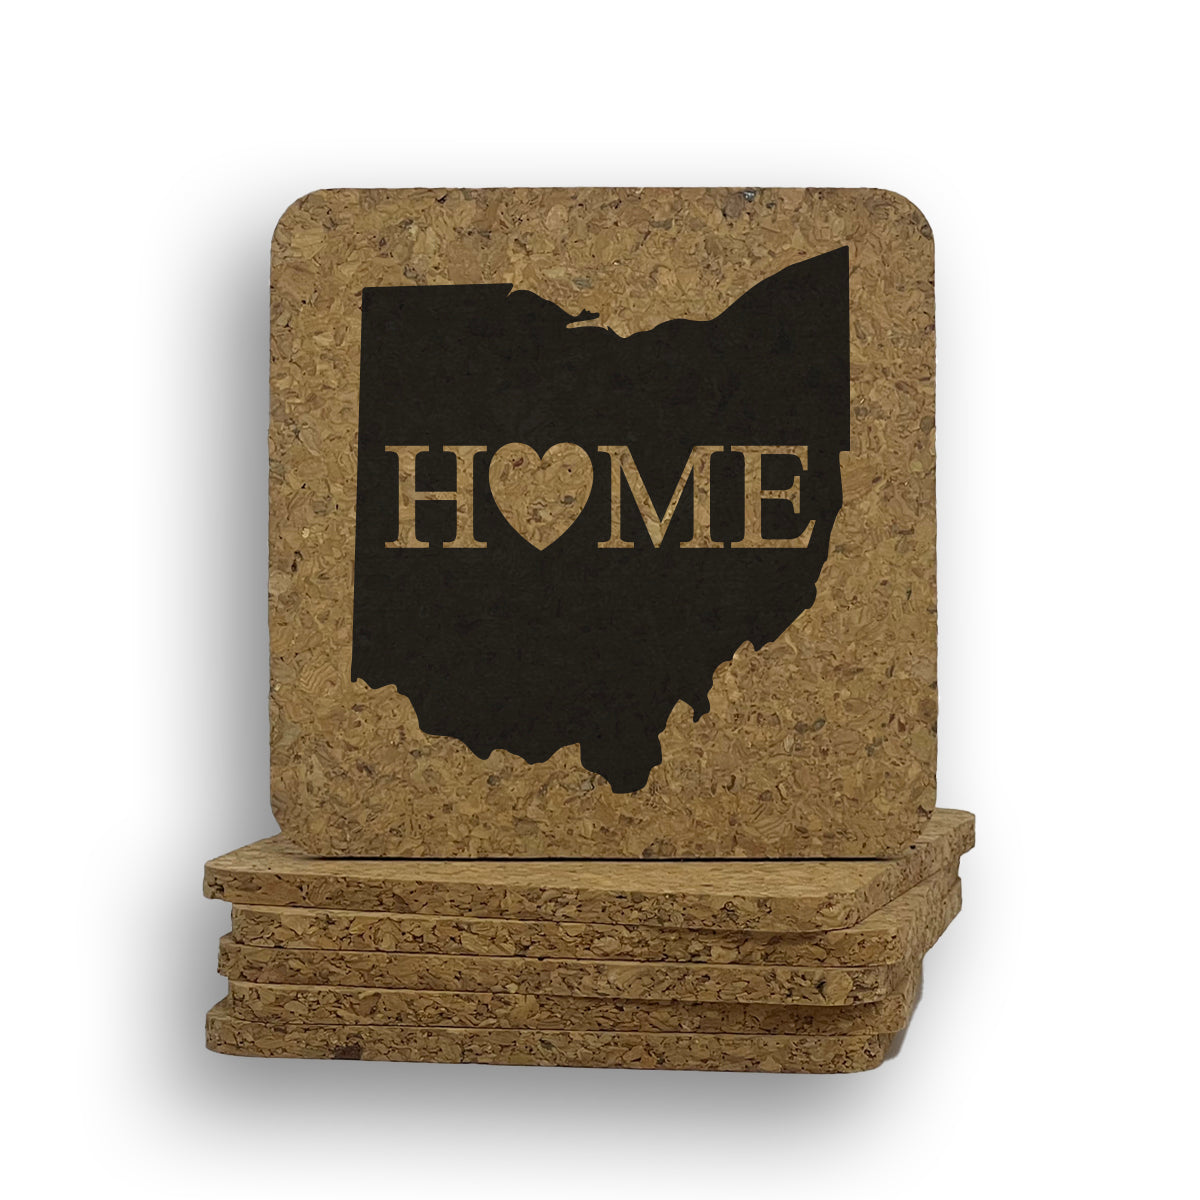 Ohio Home Coaster